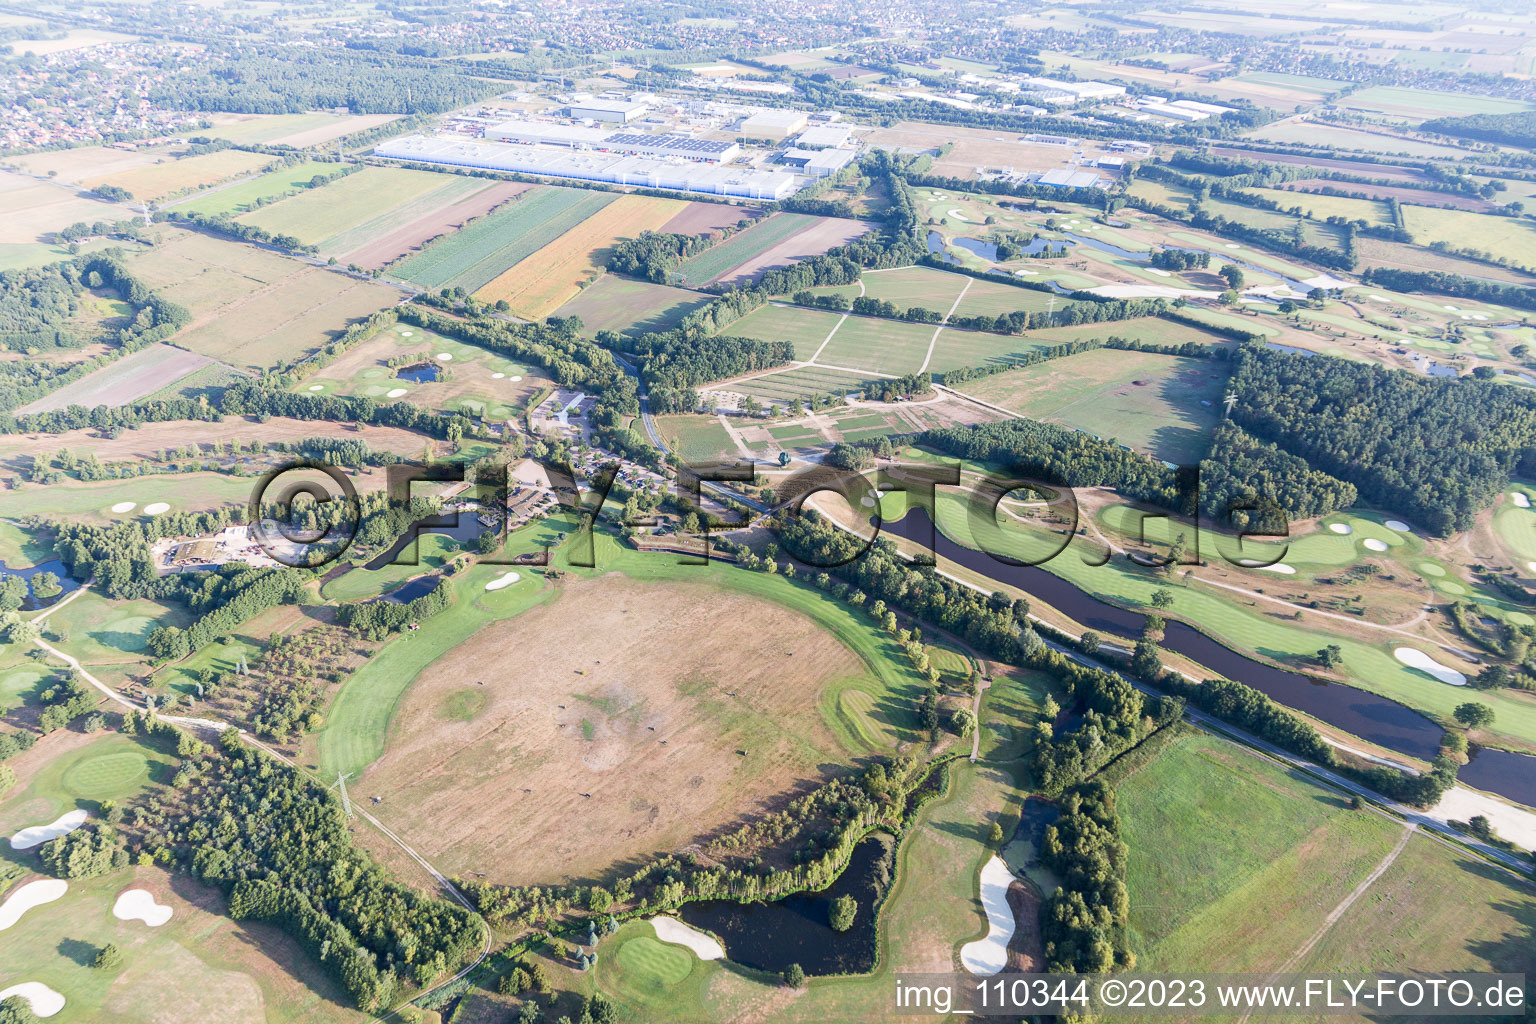 Terrain du parcours de golf Green Eagle à Winsen (Luhe) dans le département Basse-Saxe, Allemagne vu d'un drone